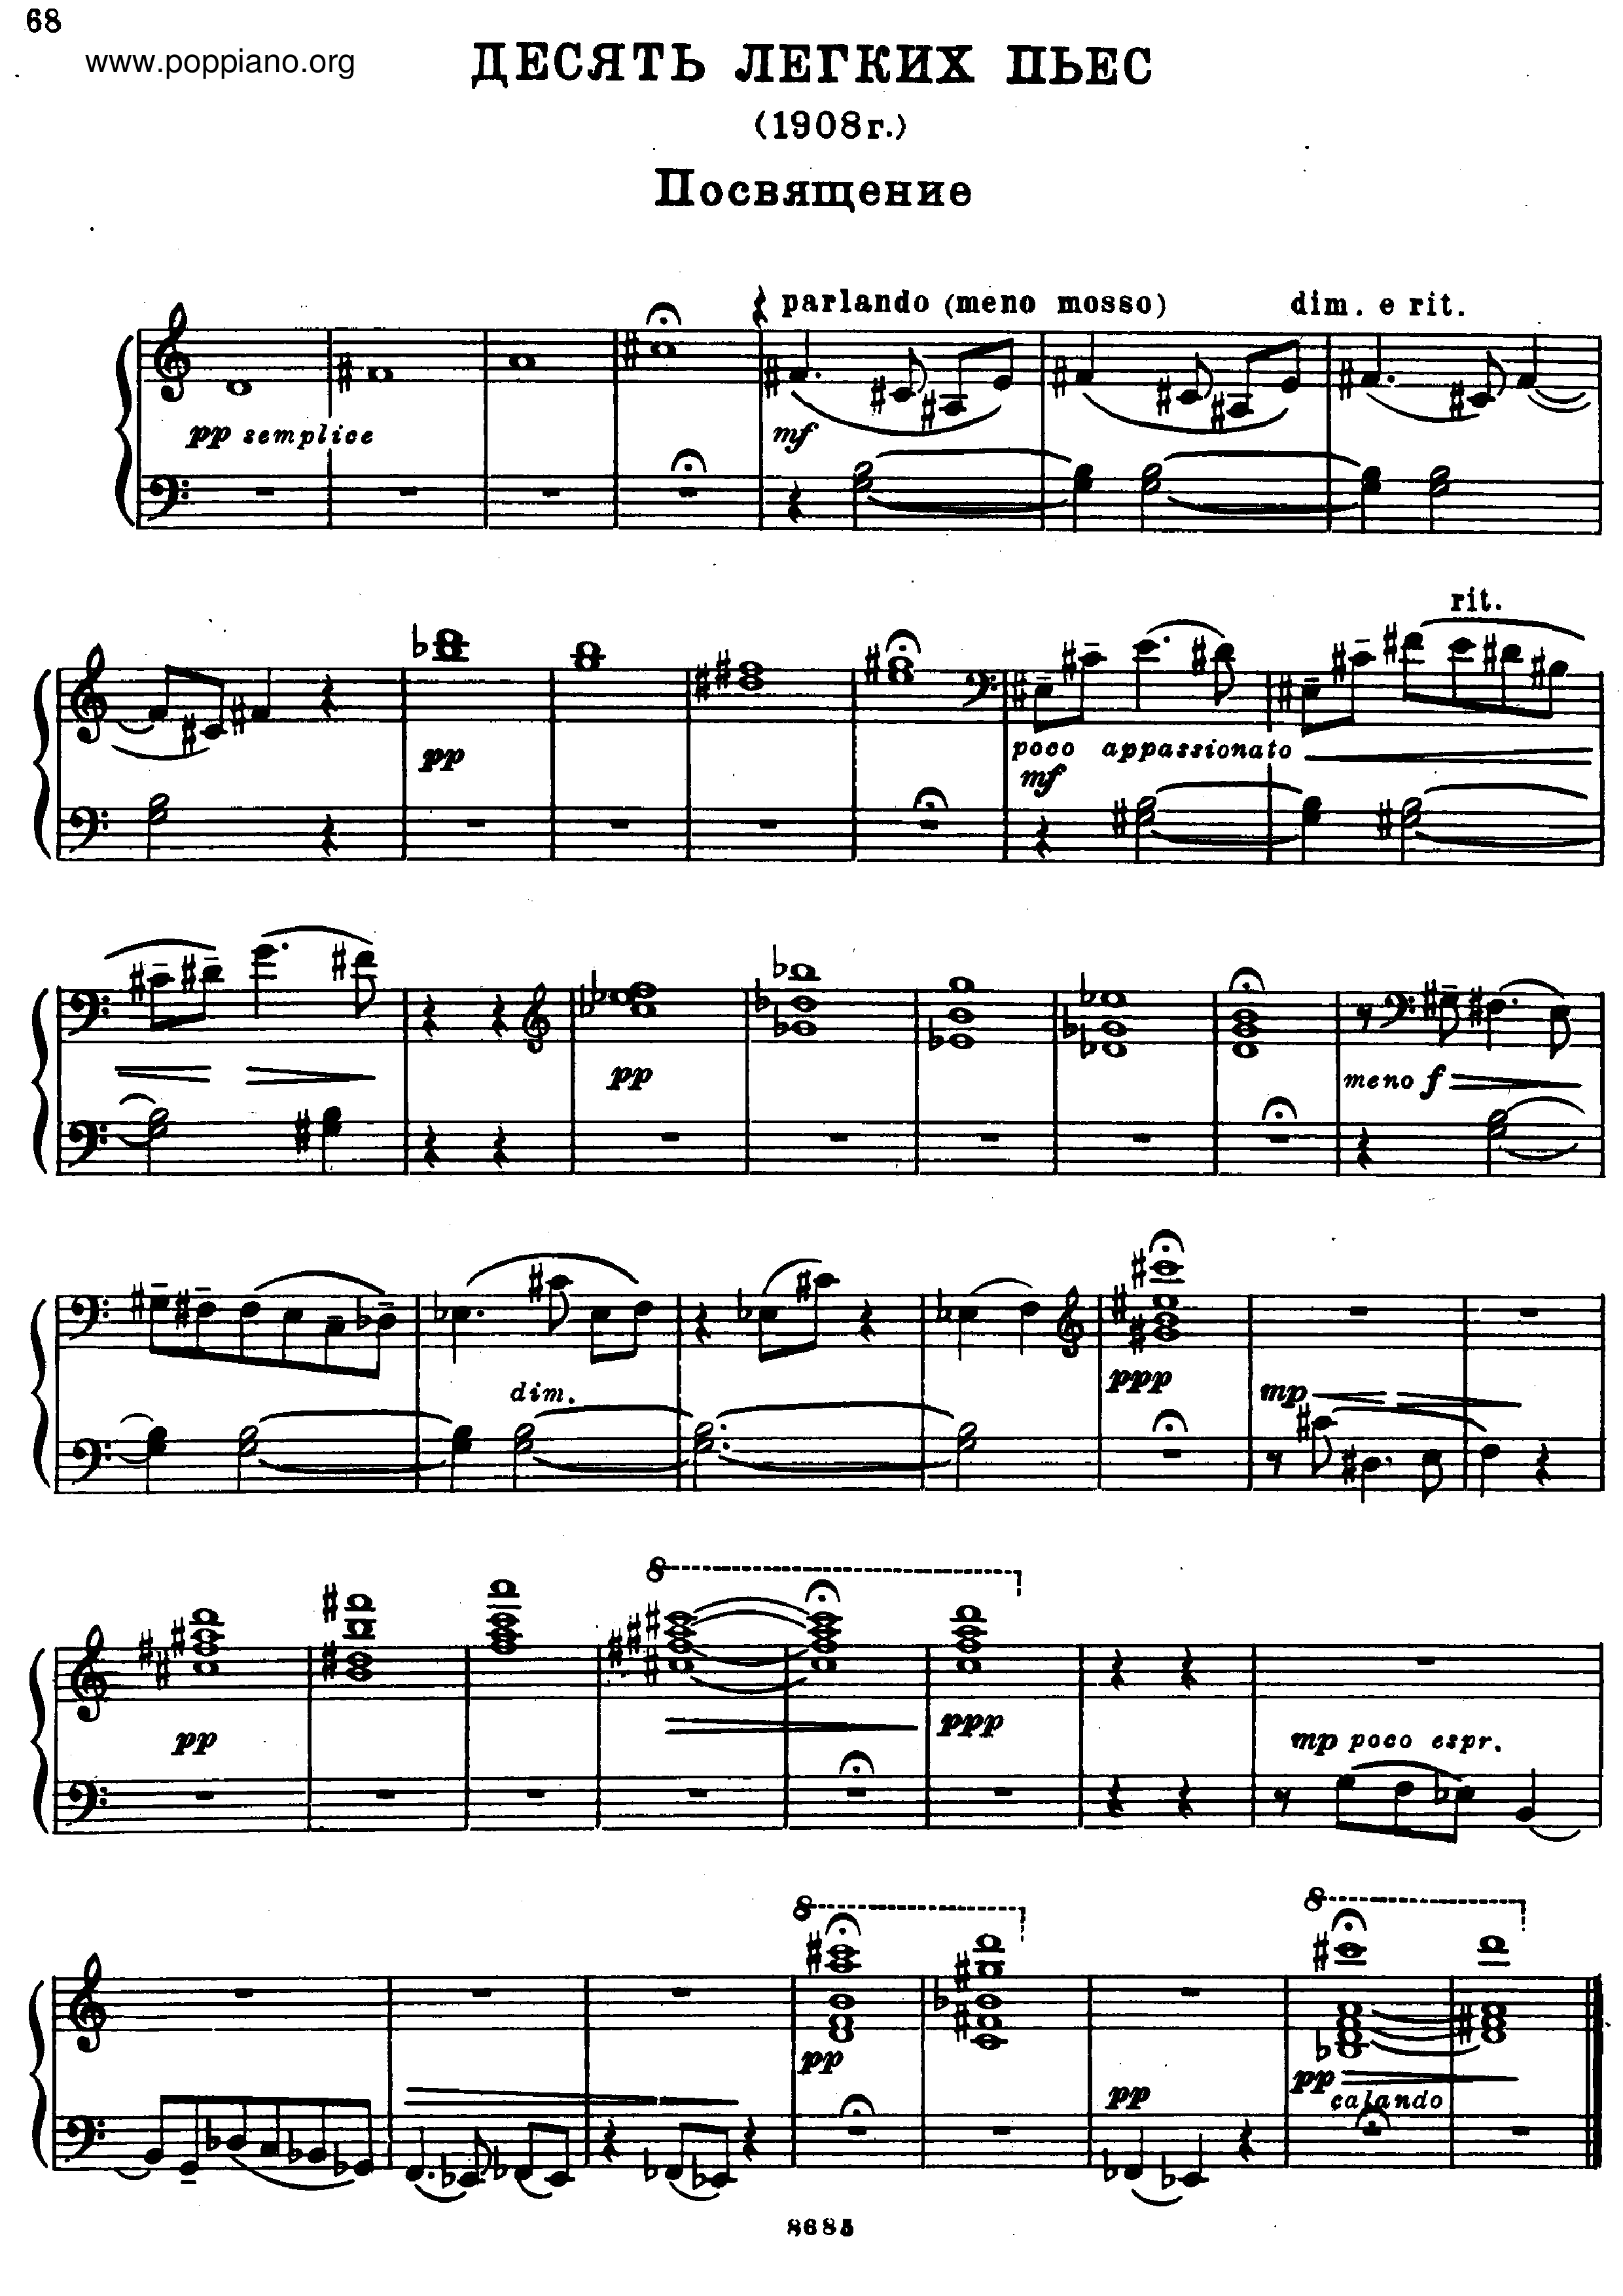 Easy Pieces Sz.39ピアノ譜